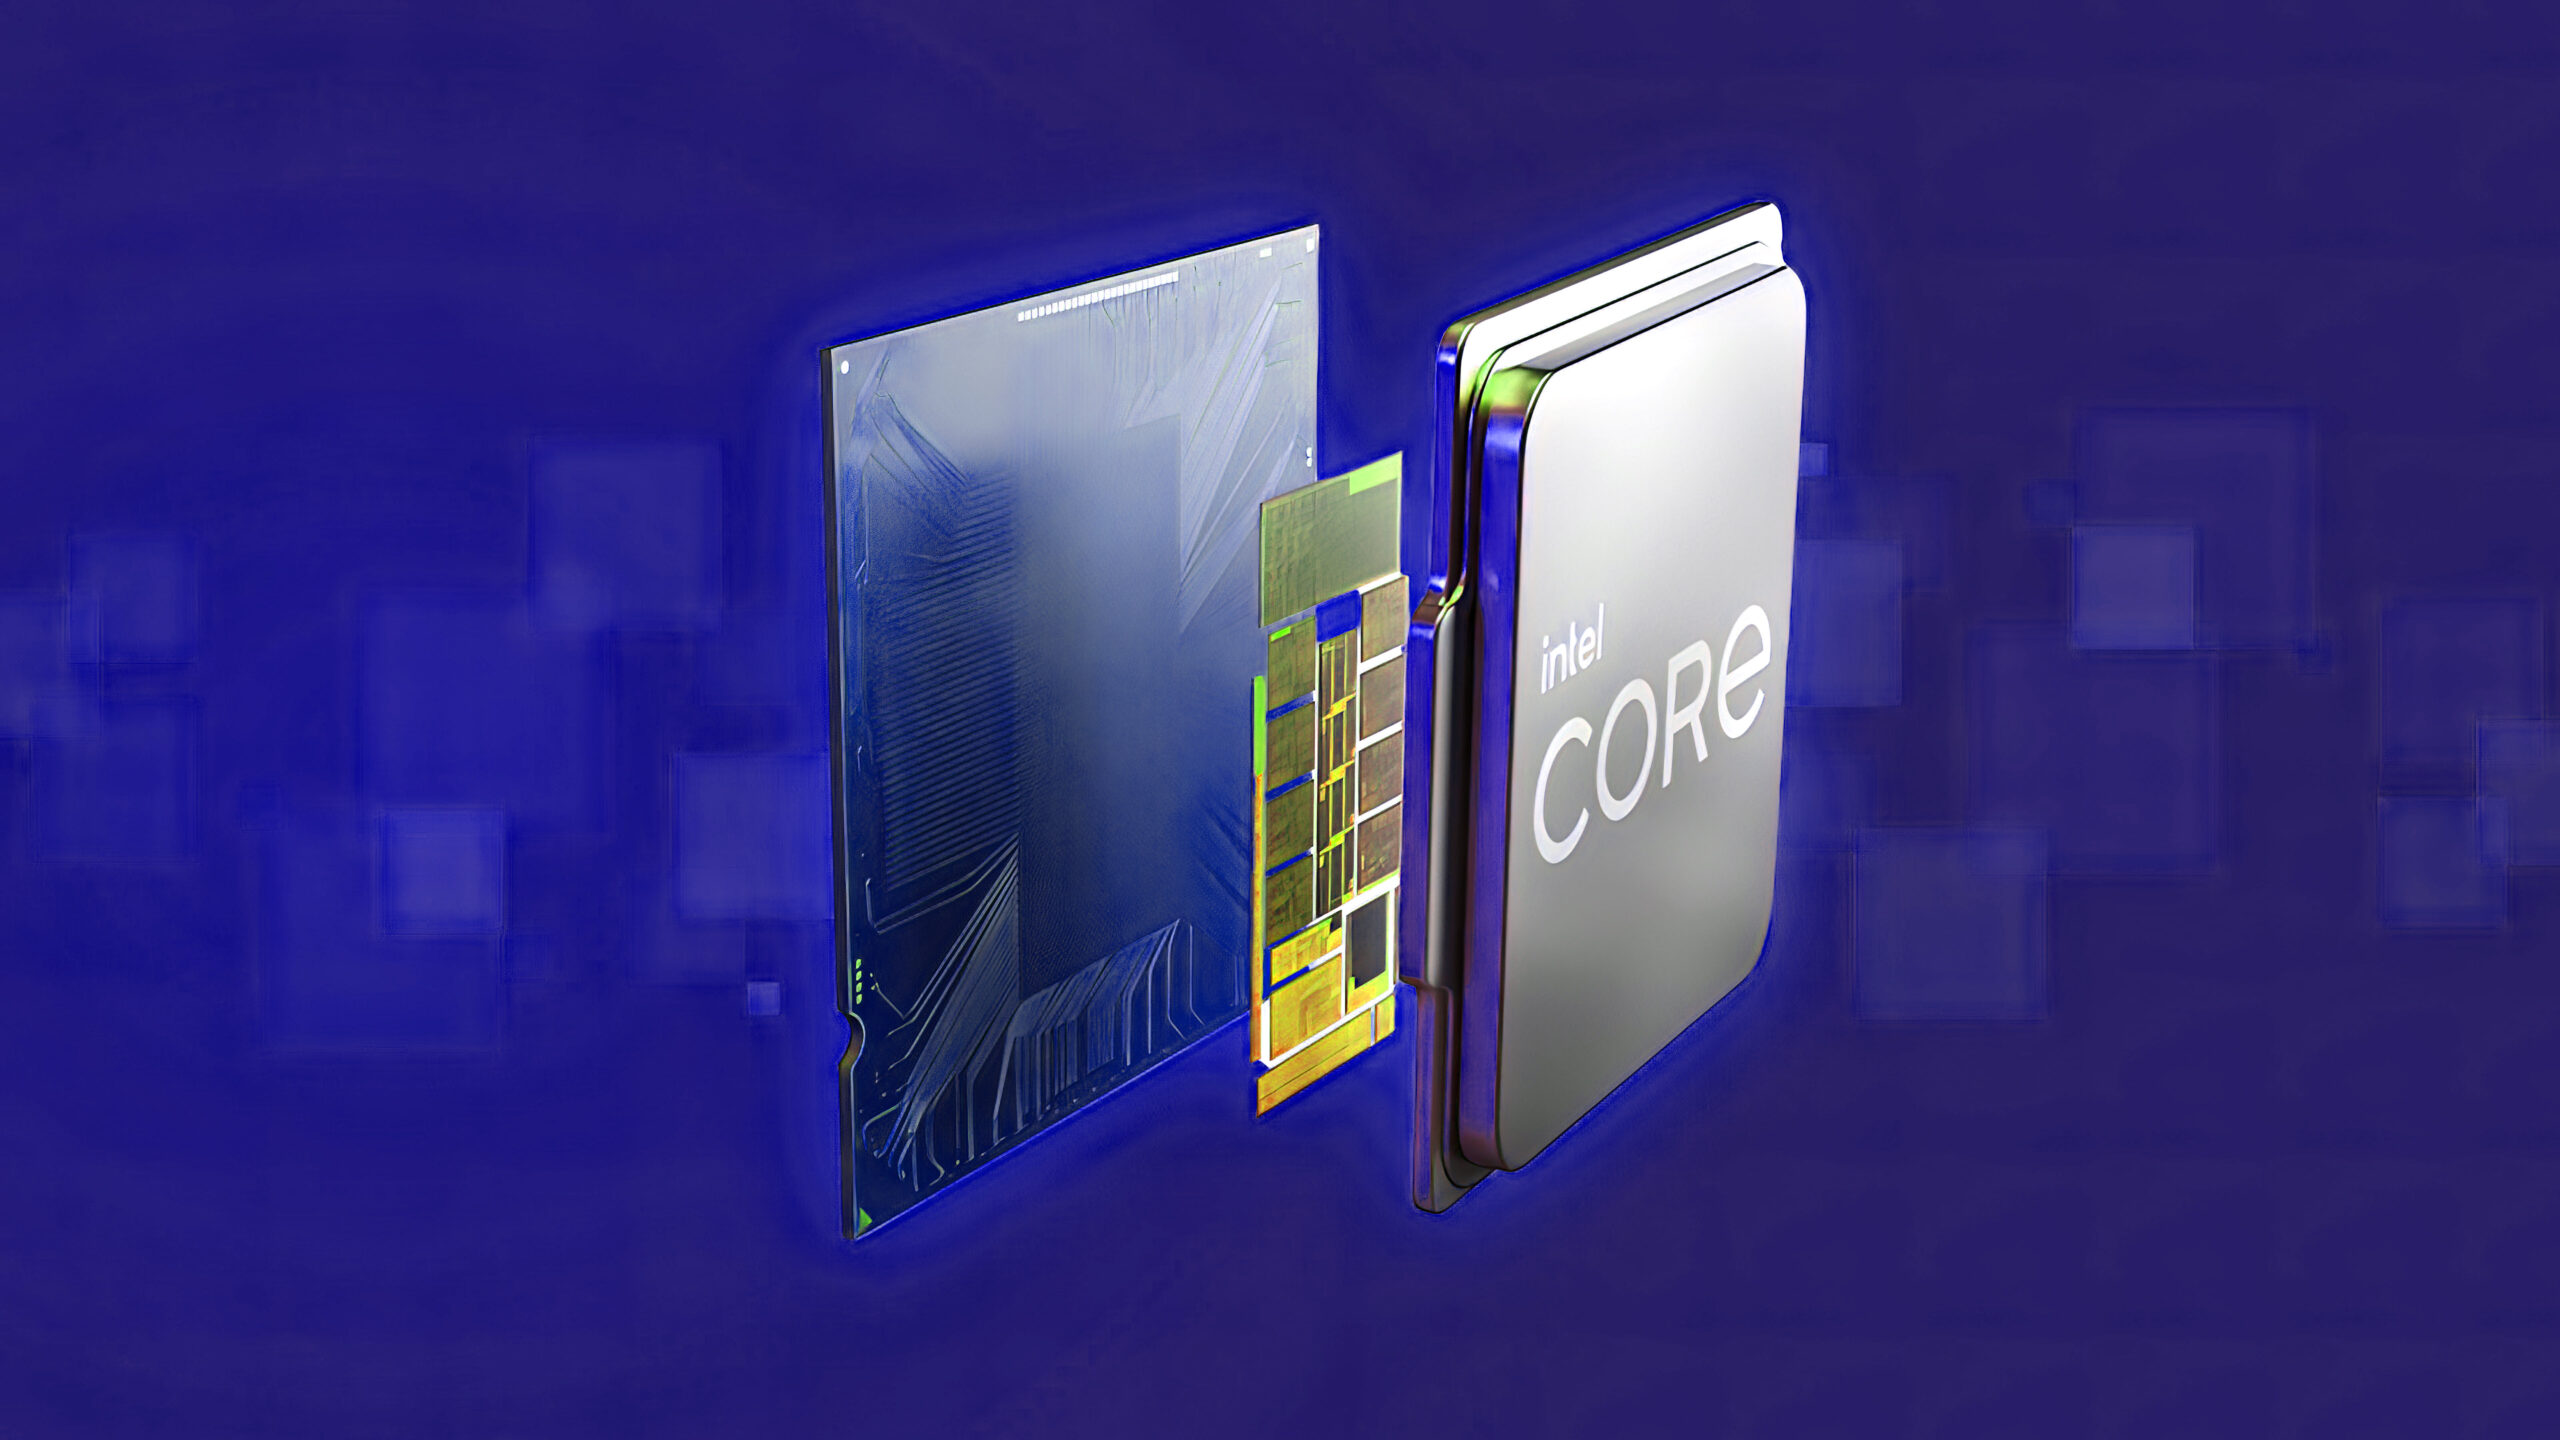 Intel представила Core i9-13900KS: первый в мире процессор с 6,0 ГГц из коробки